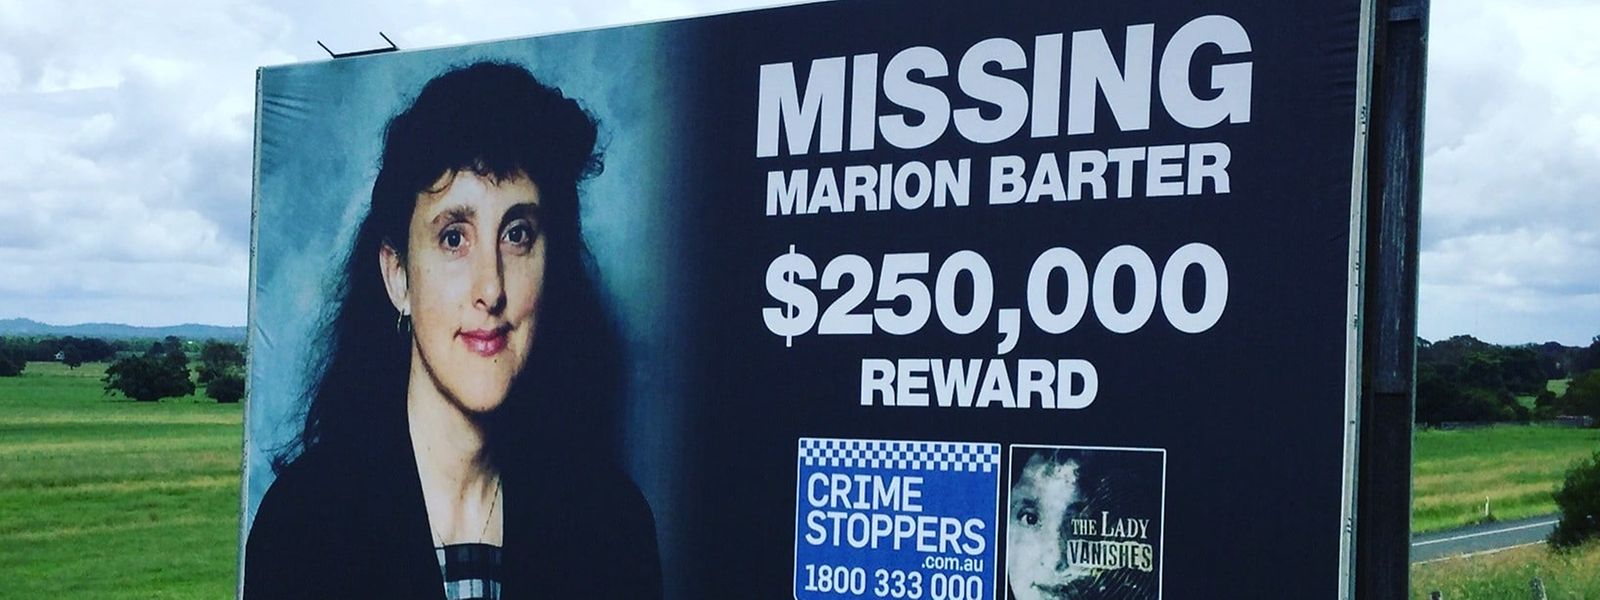 Marion Barter a quitté sa famille en Australie en 1997 et ses proches ne l'ont plus jamais revue depuis. 